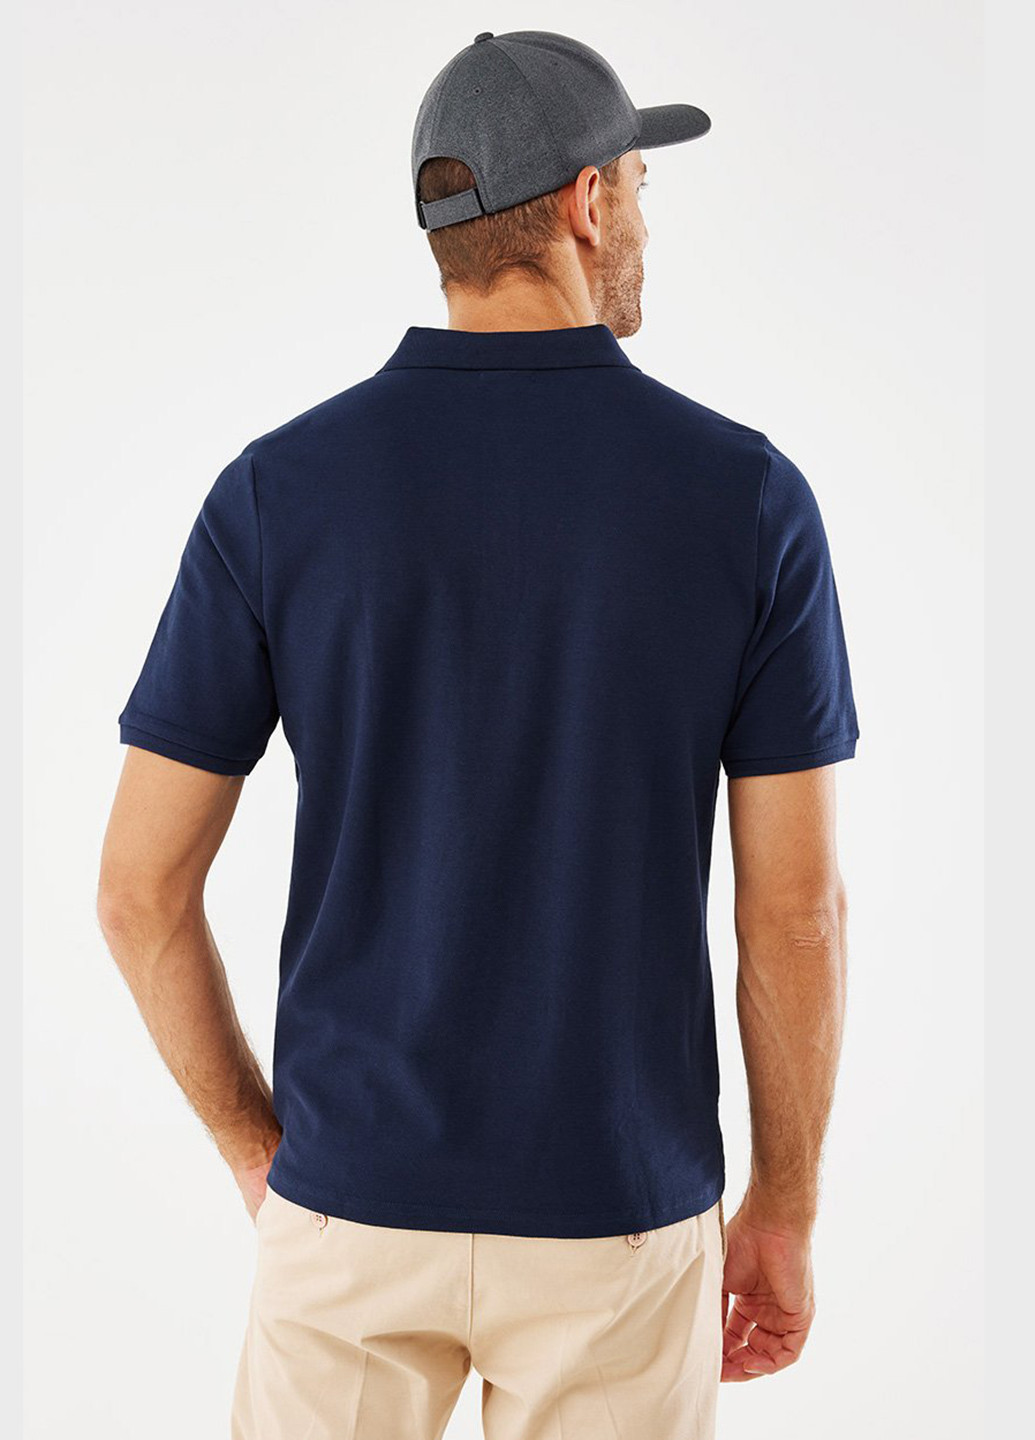 Темно-синяя футболка-поло для мужчин Mexx однотонная